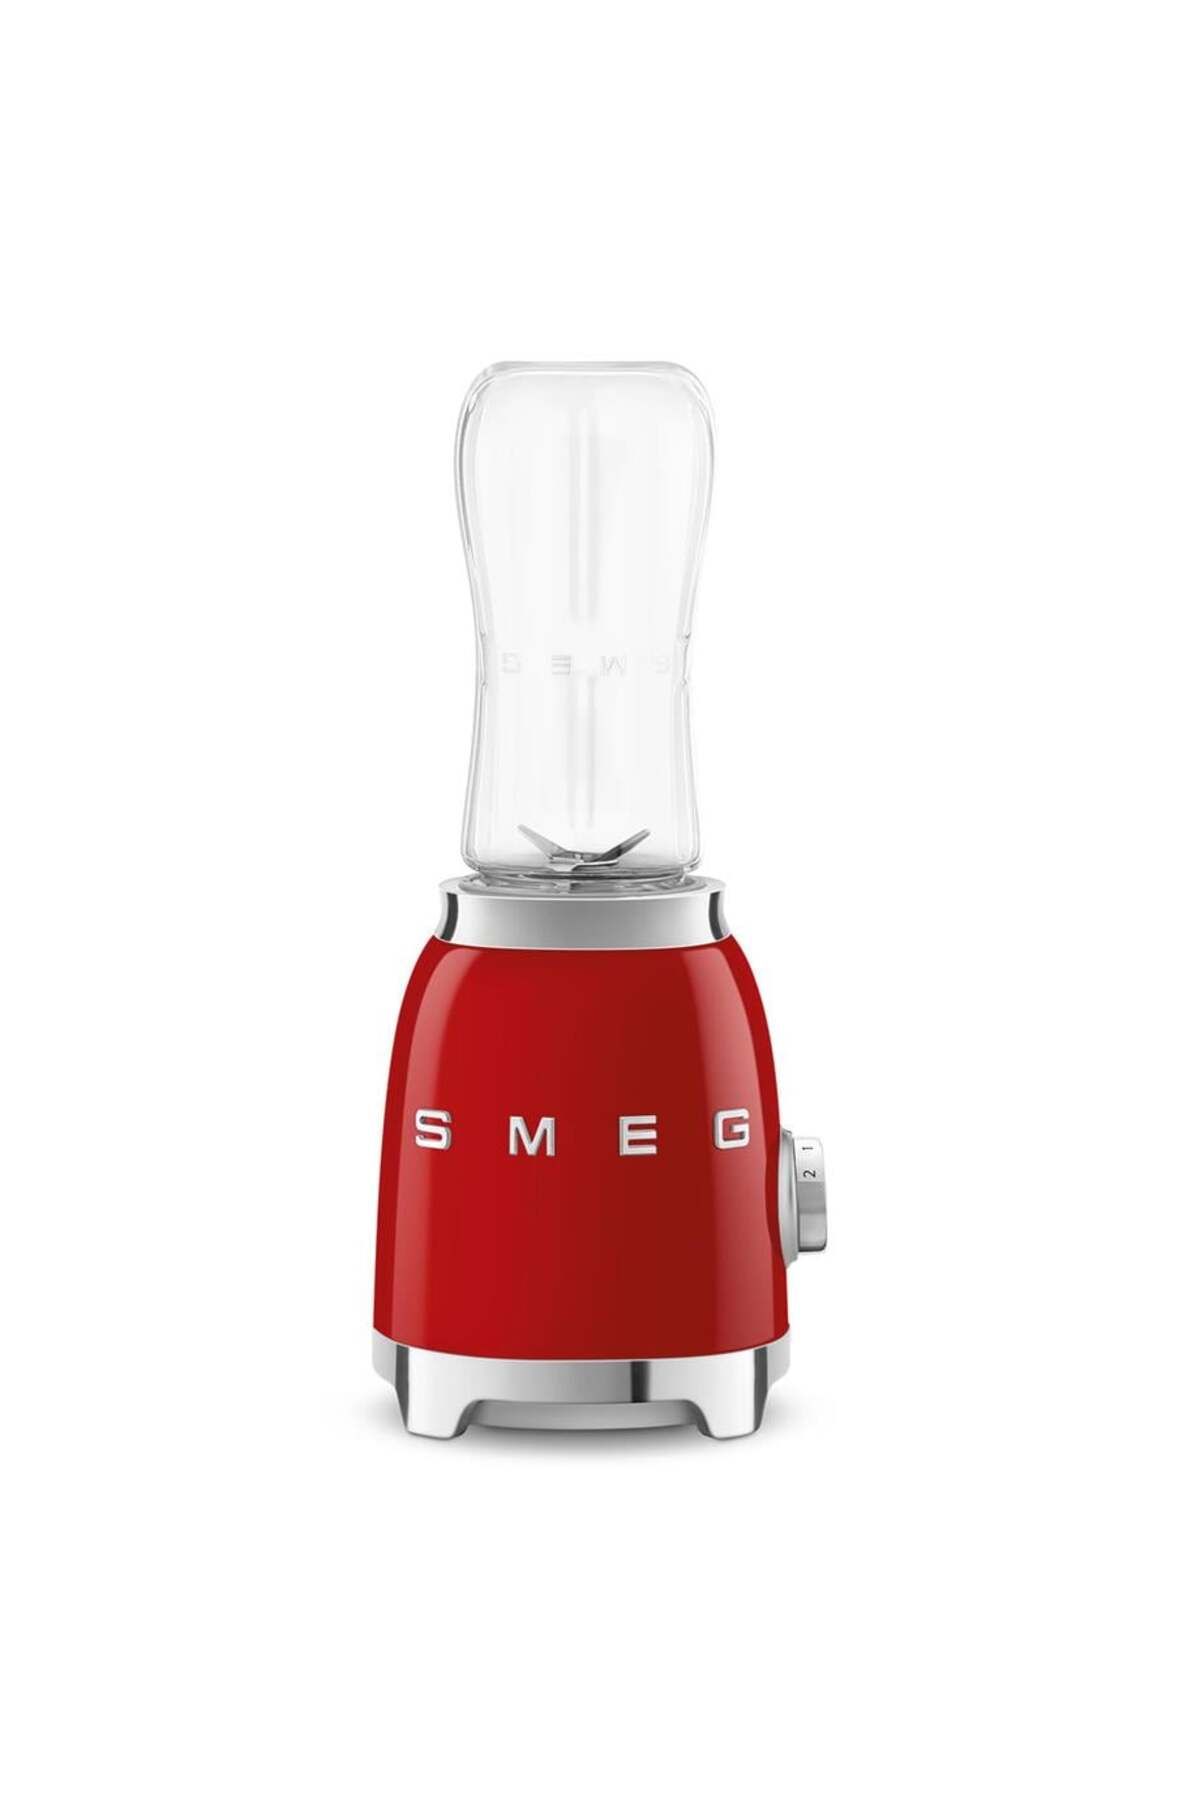 Smeg 50's Style Kırmızı Kişisel Blender